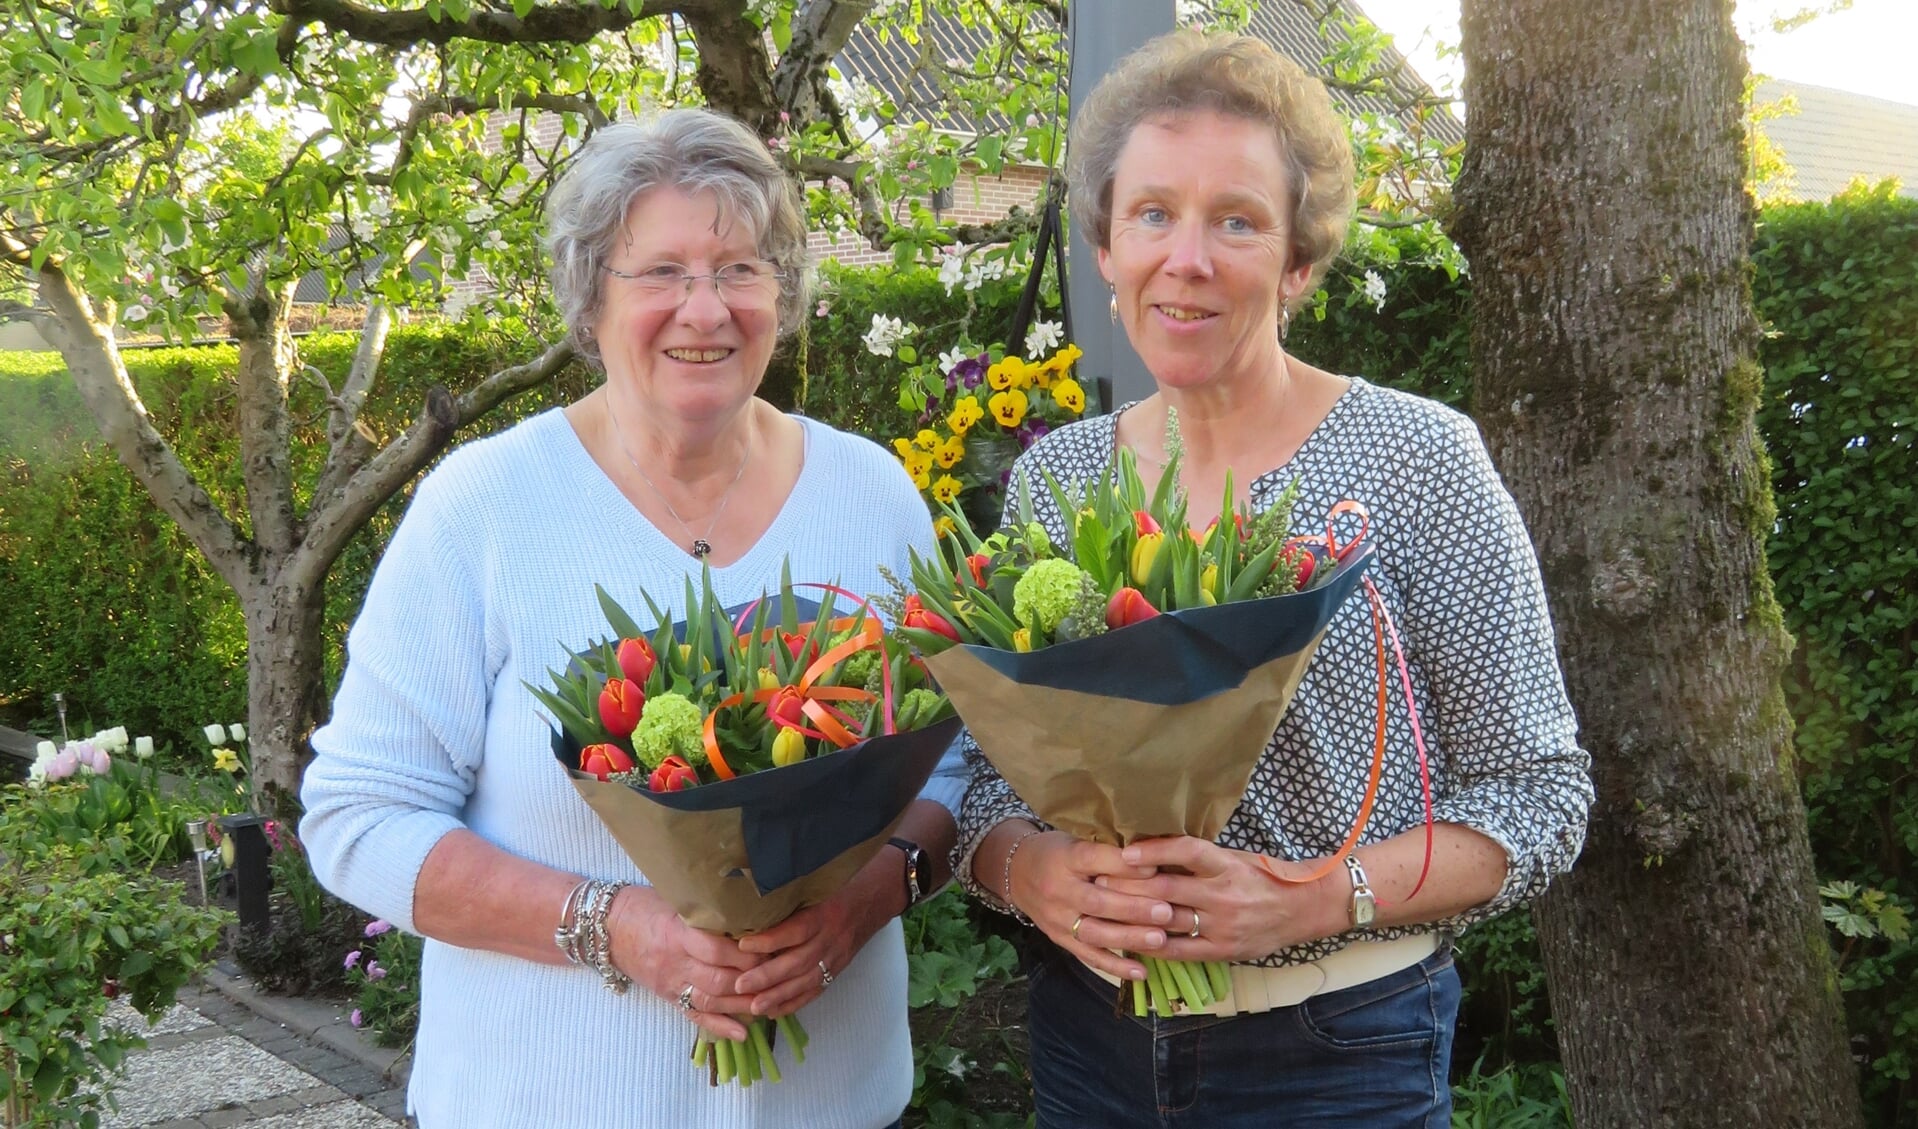 Namens de Nederlandse Hartstichting ontvingen de dames Maaike Visser en Annelies Vonk een bloemetje voor respectiefelijk 35 en 30 jaar collecteren in Schelluinen.